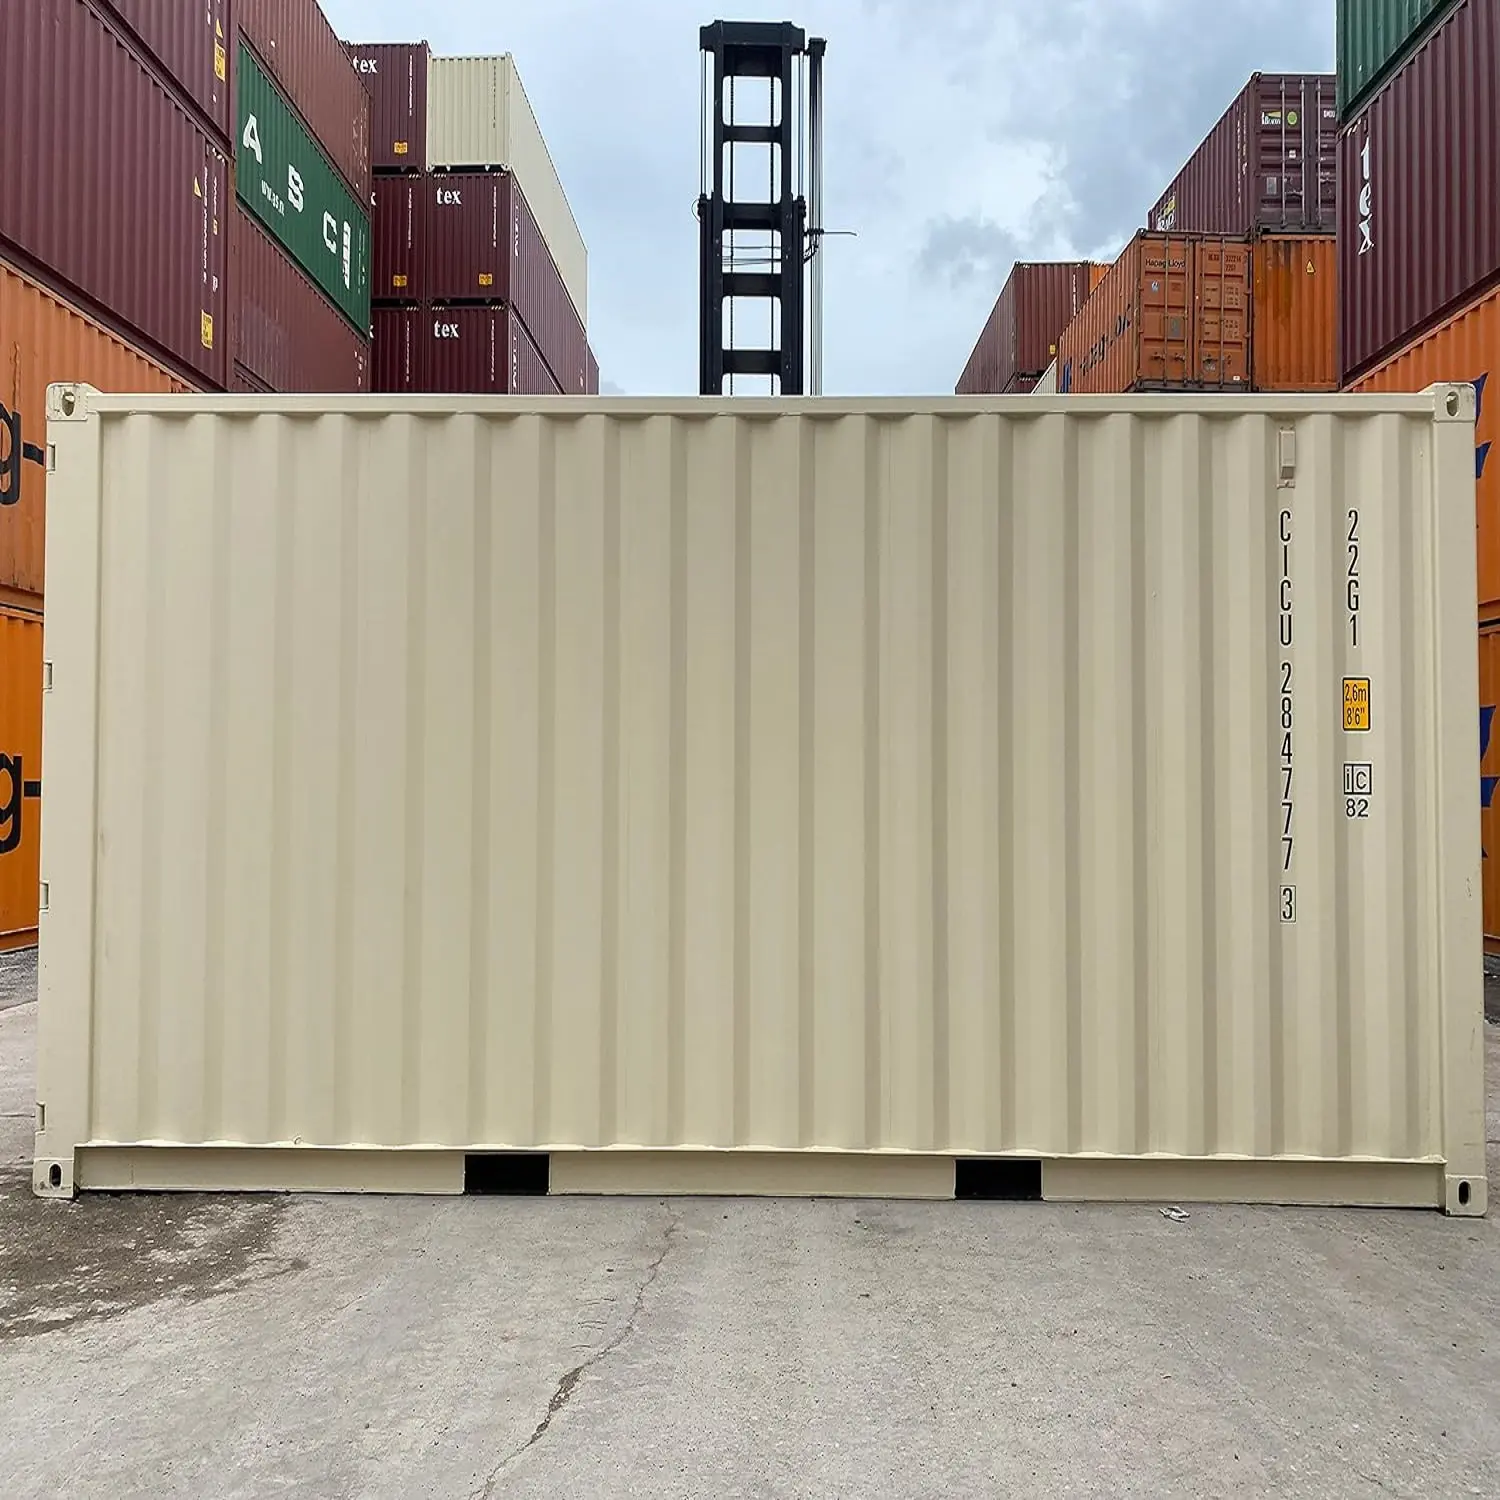 Sıcak satış 40 'hc tam kullanılmış nakliye konteyneri satılık maliyet perakende mağaza sahipsiz kargo-konteynerler açık artırmalar